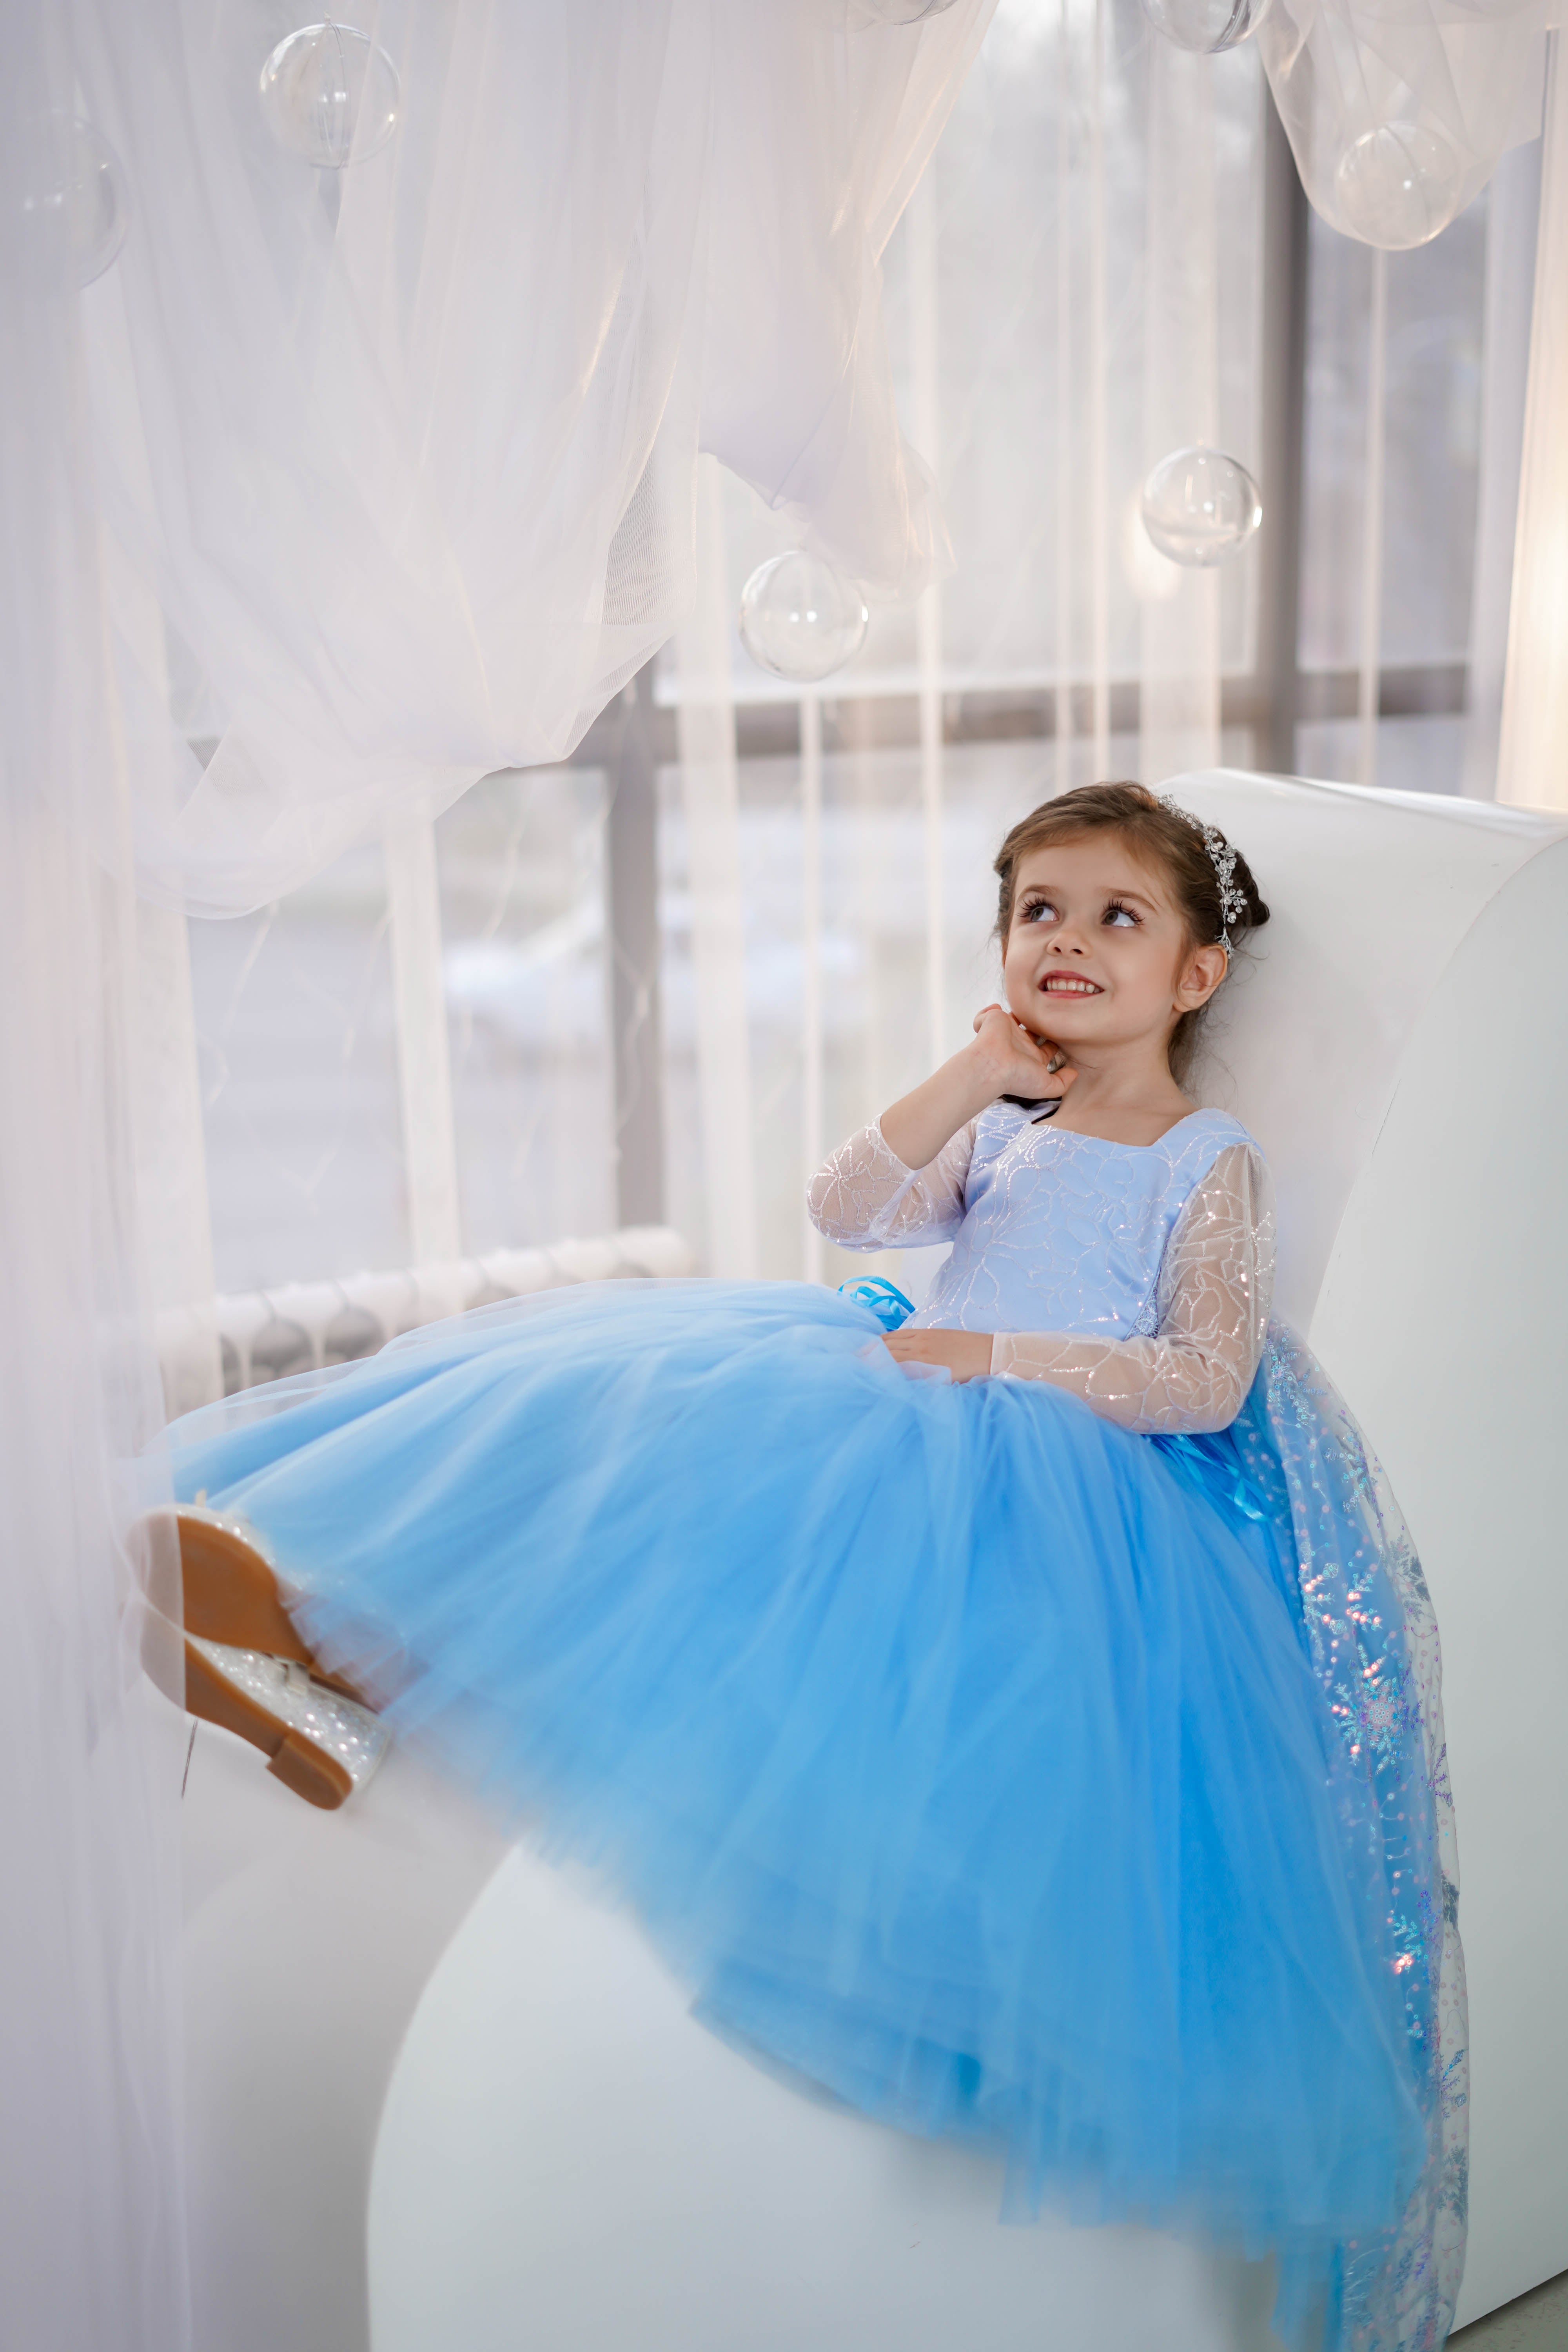 Frozen' inspired wedding dress debuts | DisneyExaminer